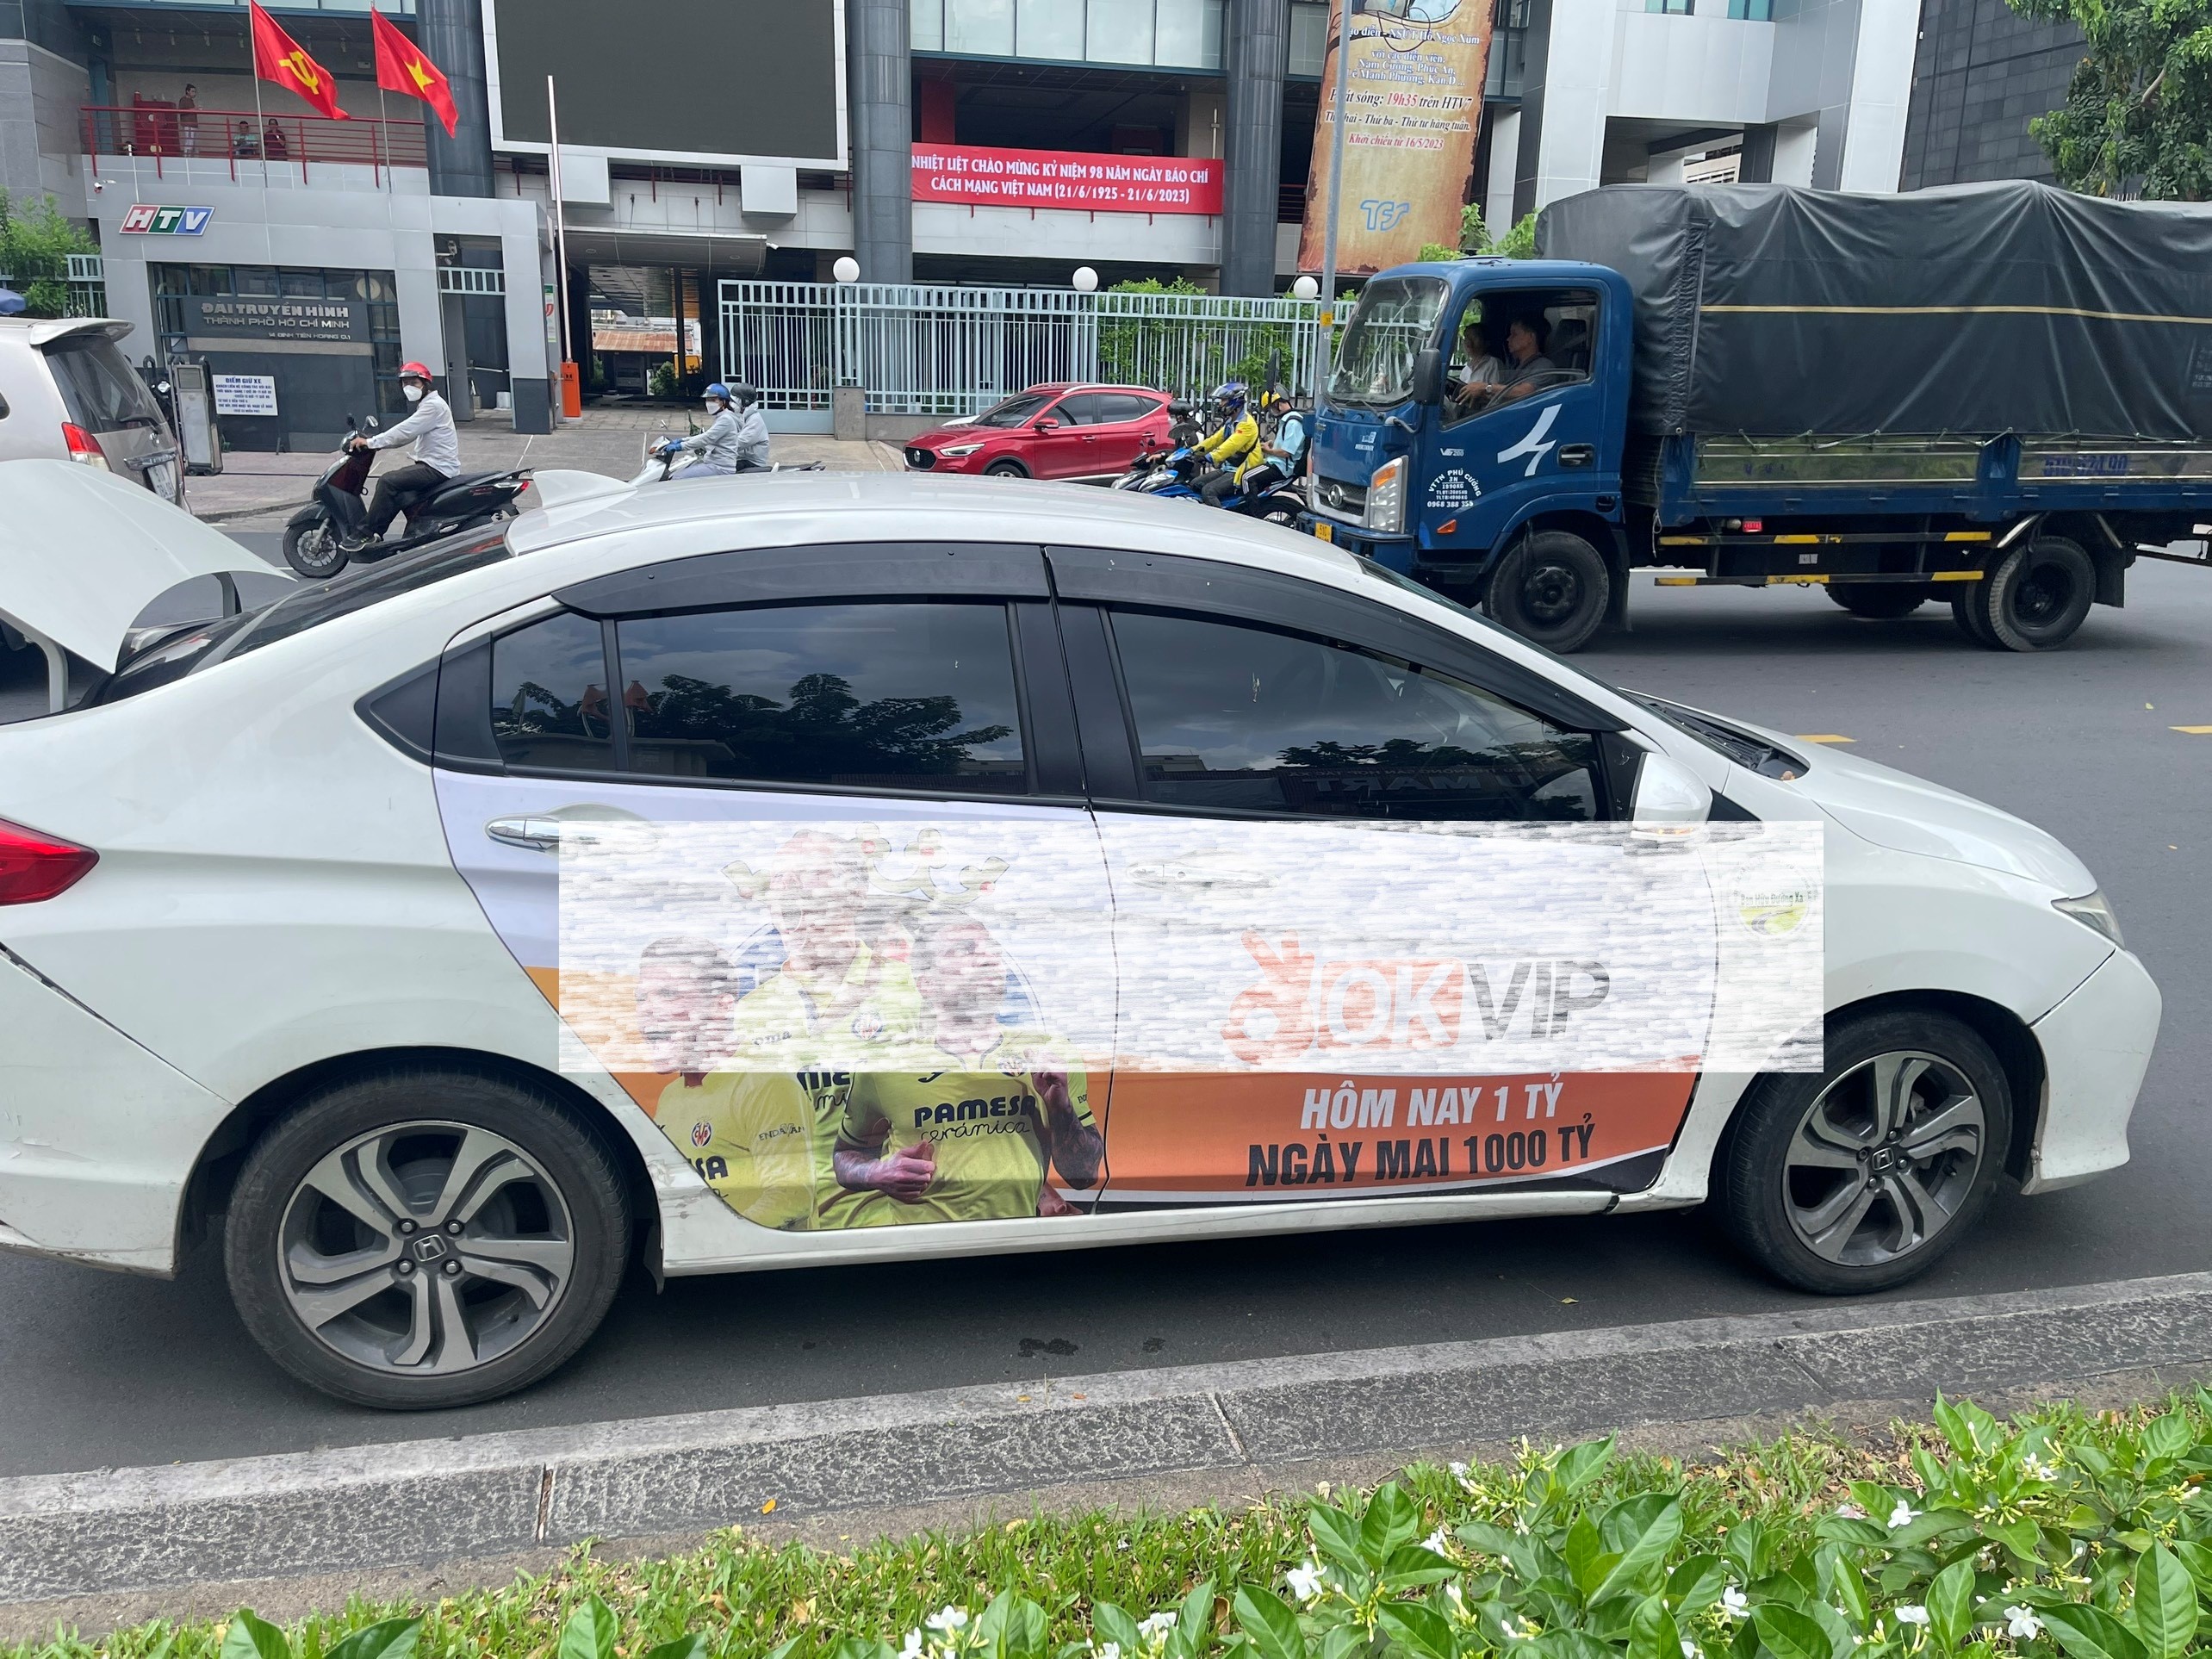 (Hình ảnh: Xe ô tô con dán quảng cáo không đúng quy định lưu thông trên đường  bị lực lượng CSGT Thành phố xử phạt)